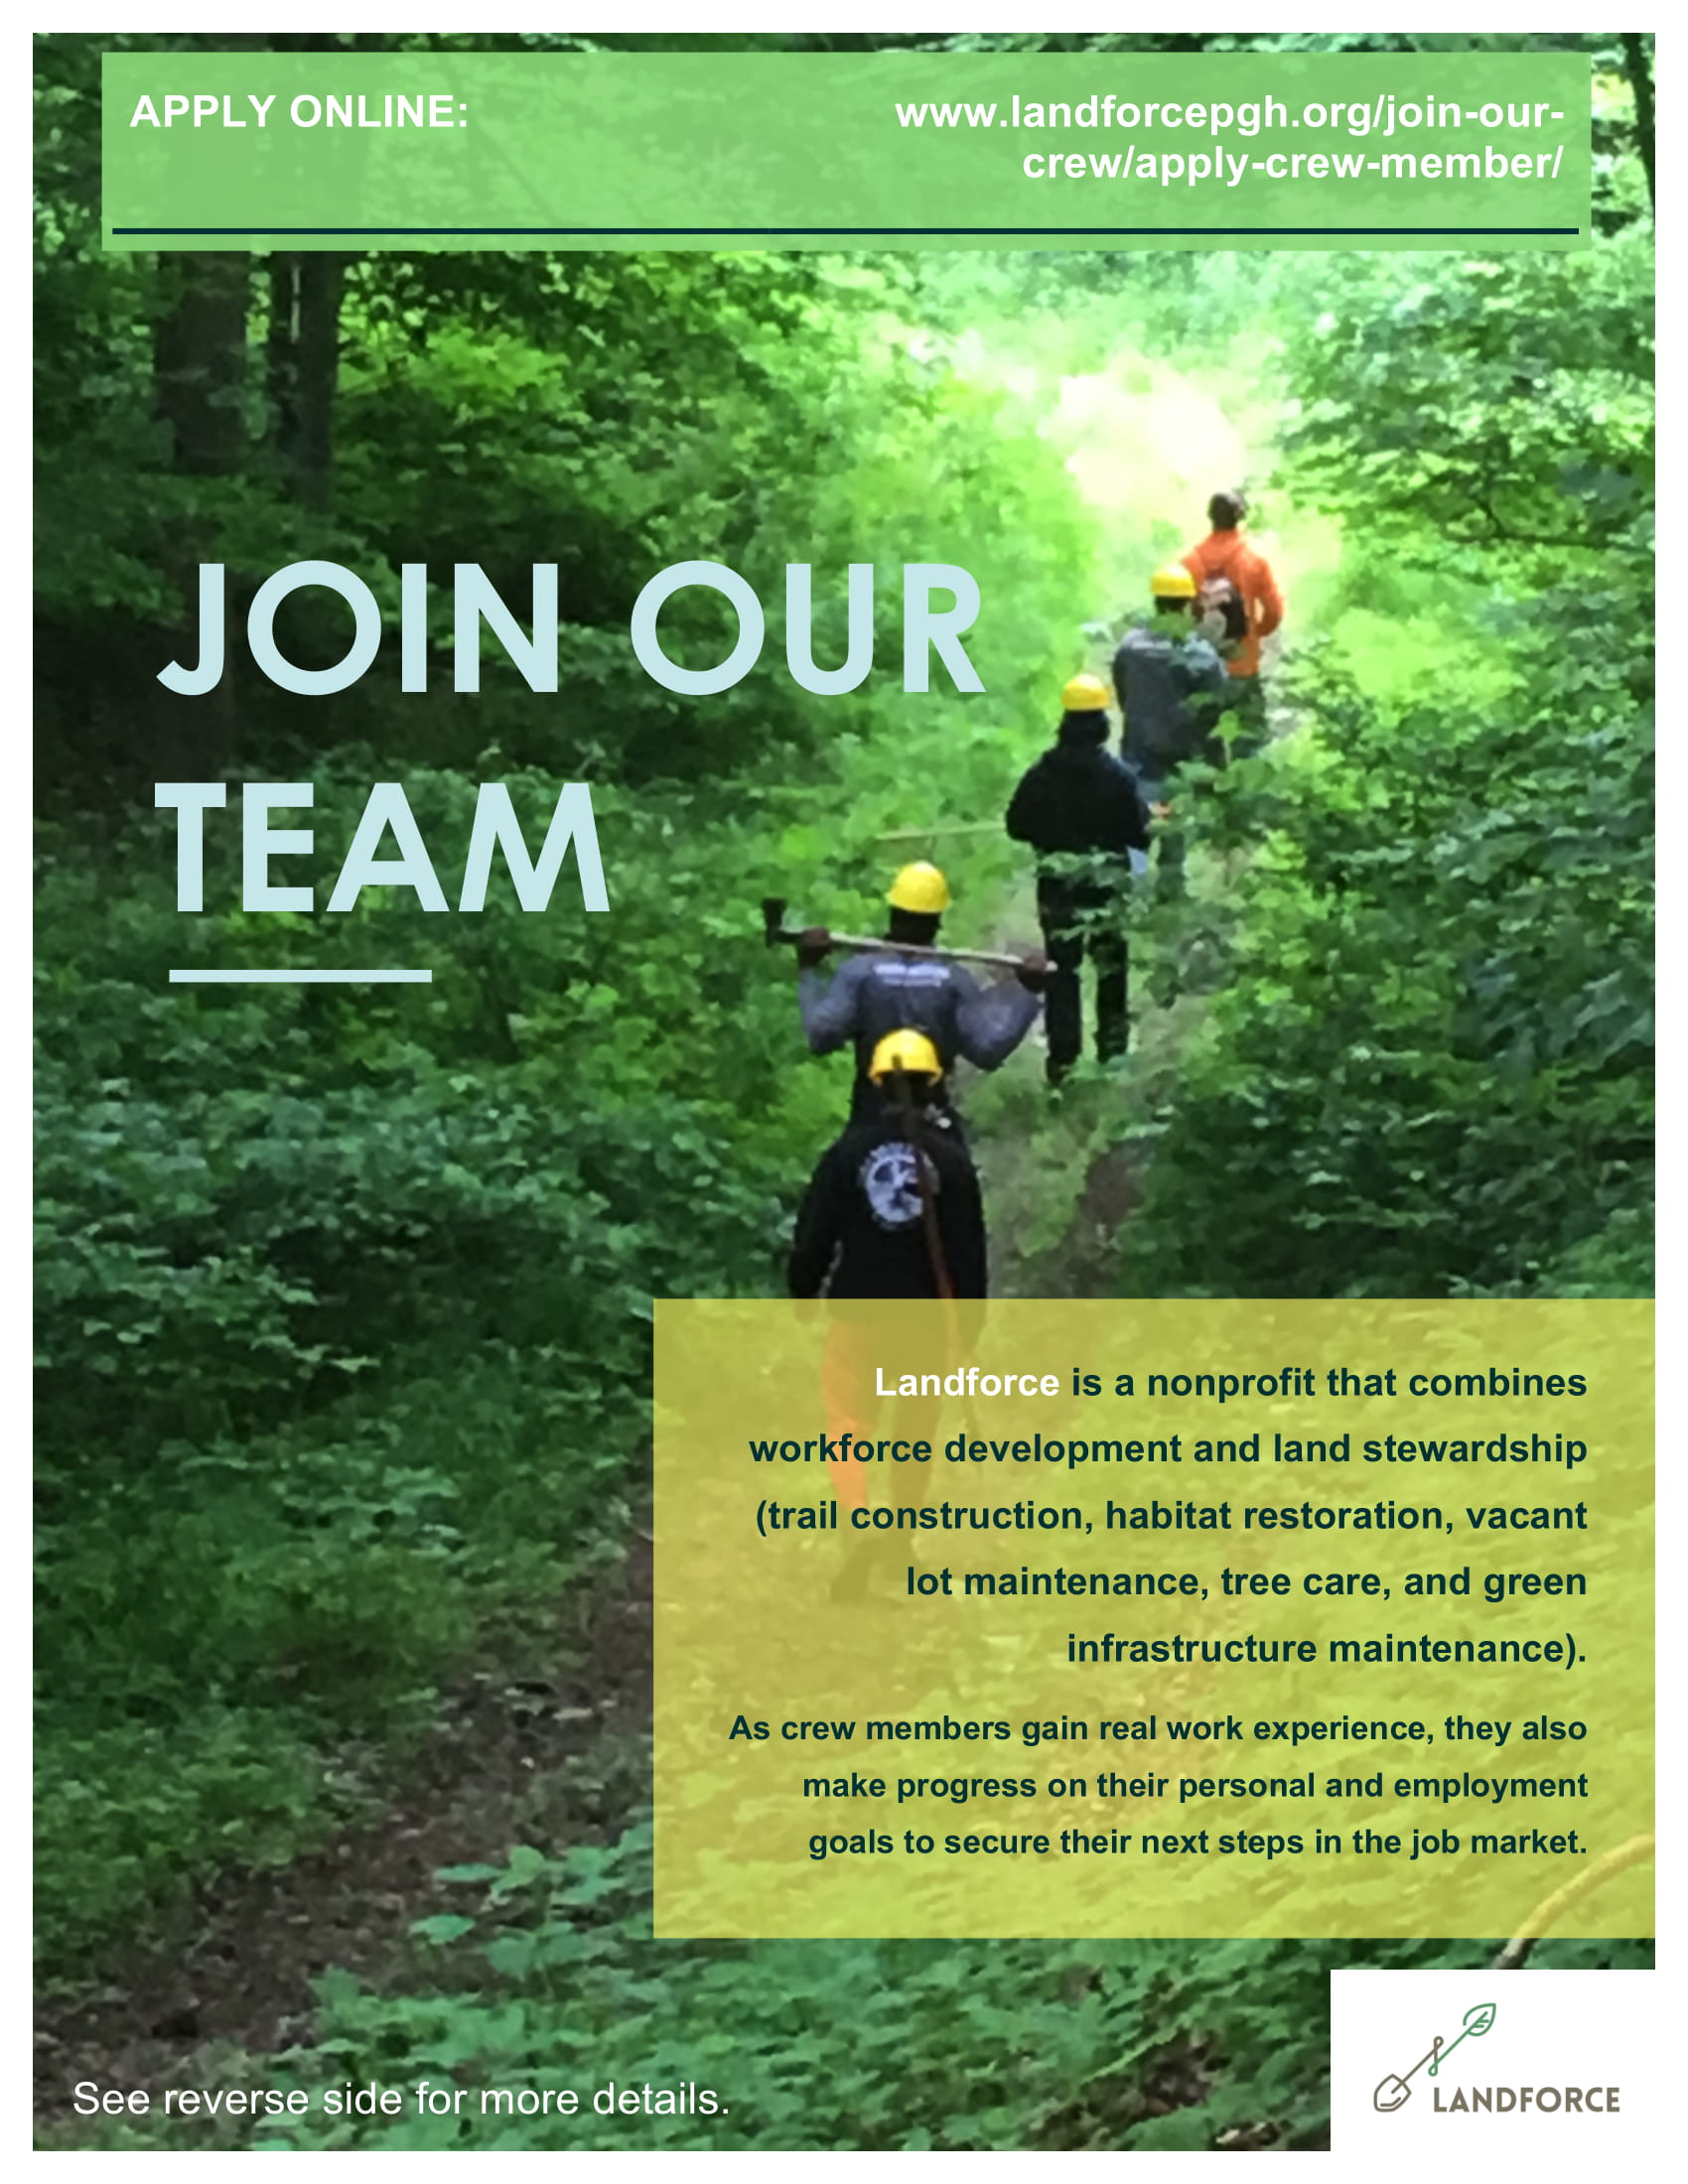 Join our team: www.landforcepgh.org/join-our-crew/apply-crew-member/